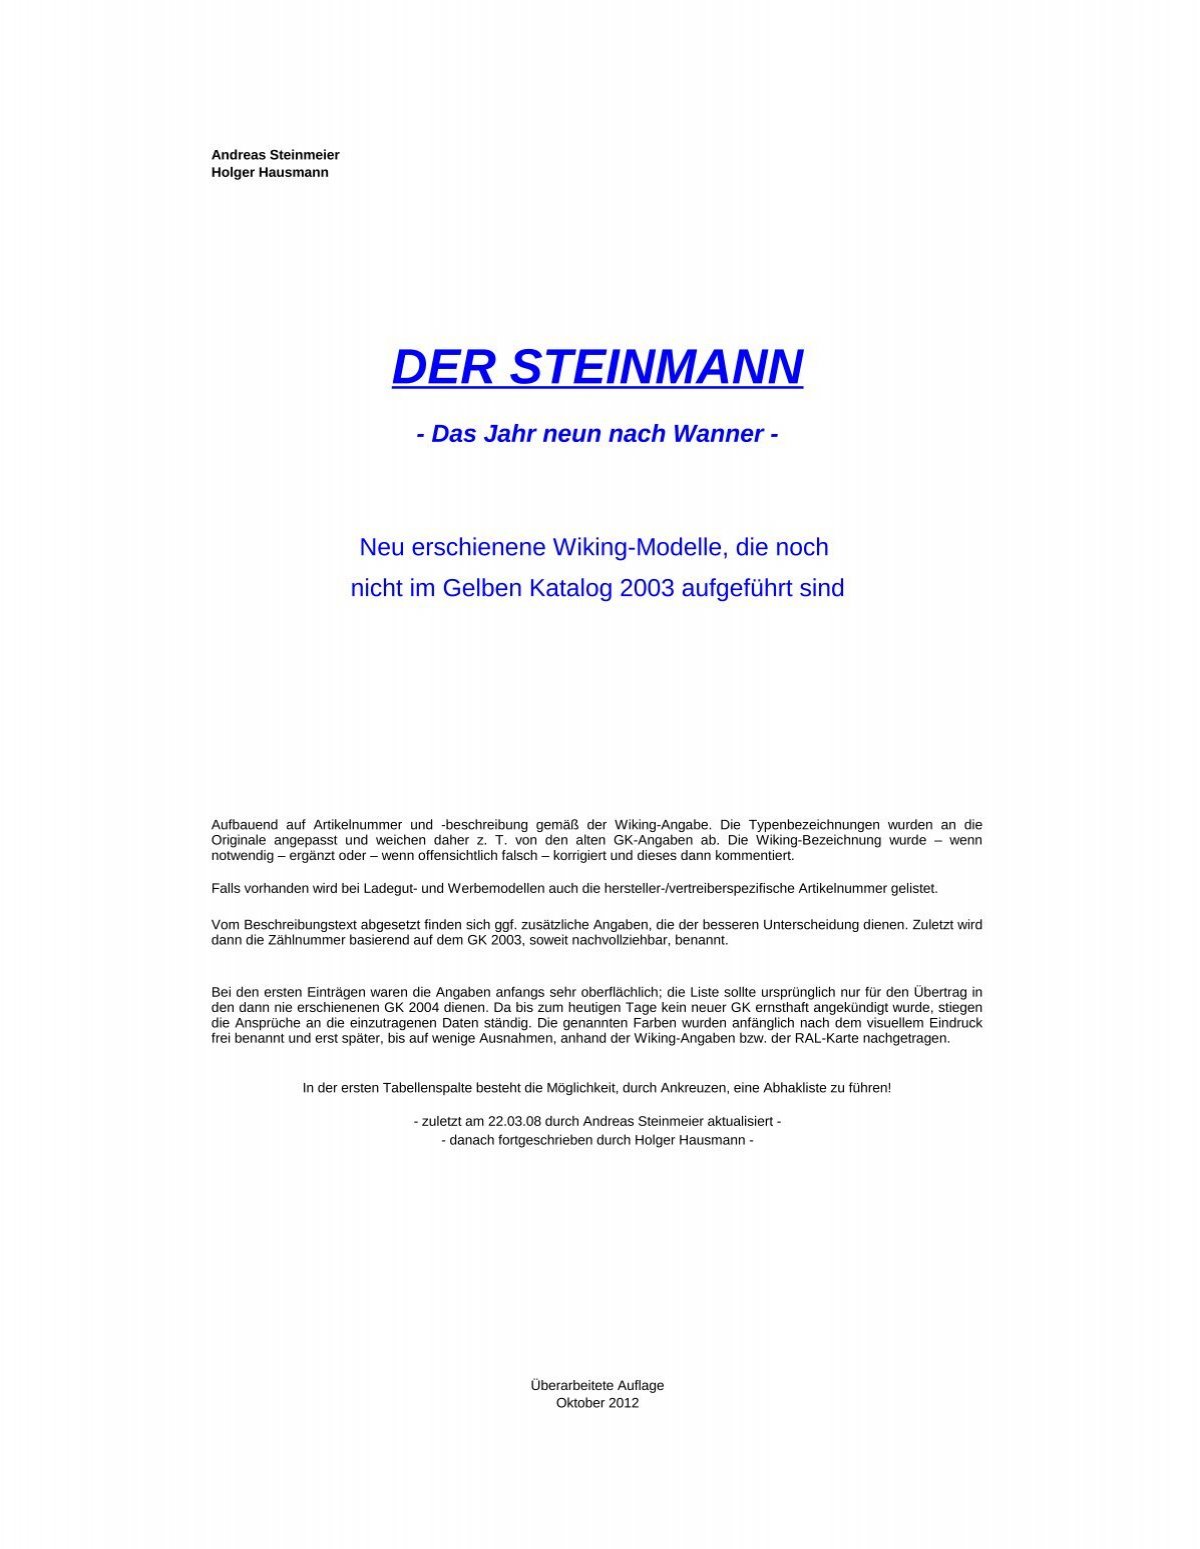 DER STEINMANN - Wikingsammler